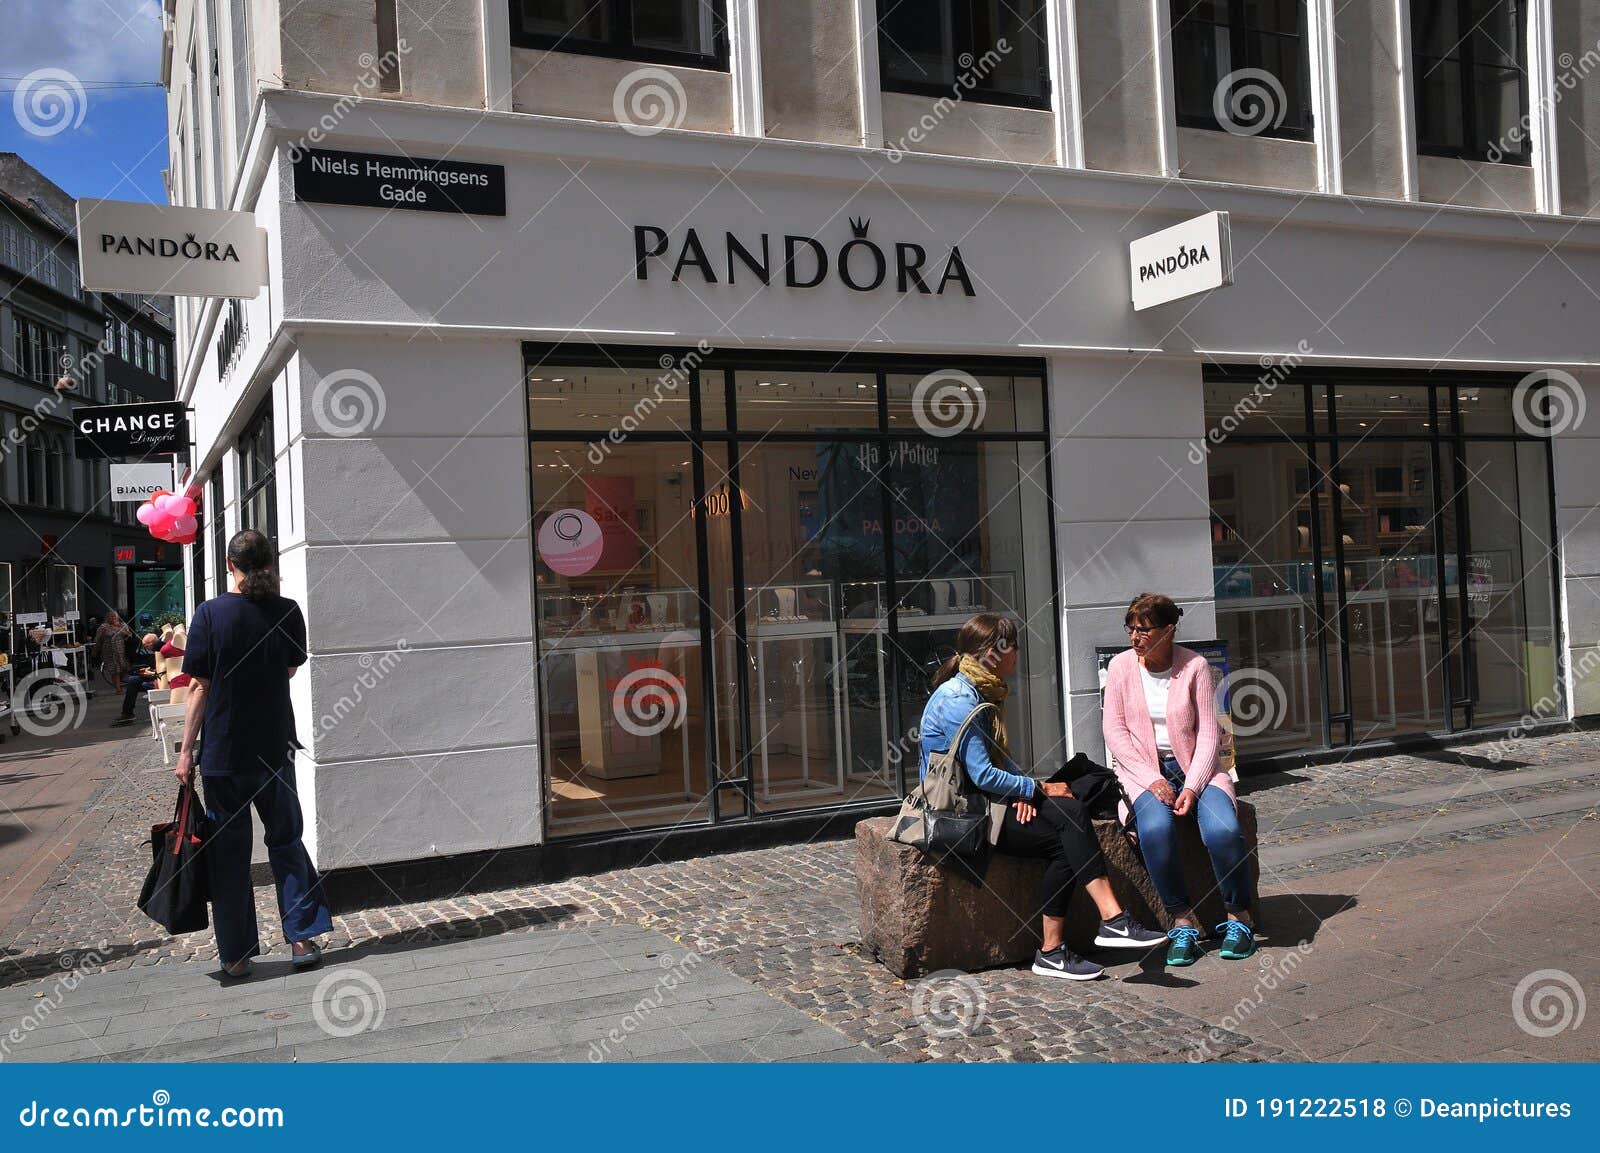 achtergrond zien In zoomen Winkel Voor Een Ront - Pandora - Juwelen in Kopenhagen Redactionele Stock  Foto - Image of zaken, klanten: 191222518